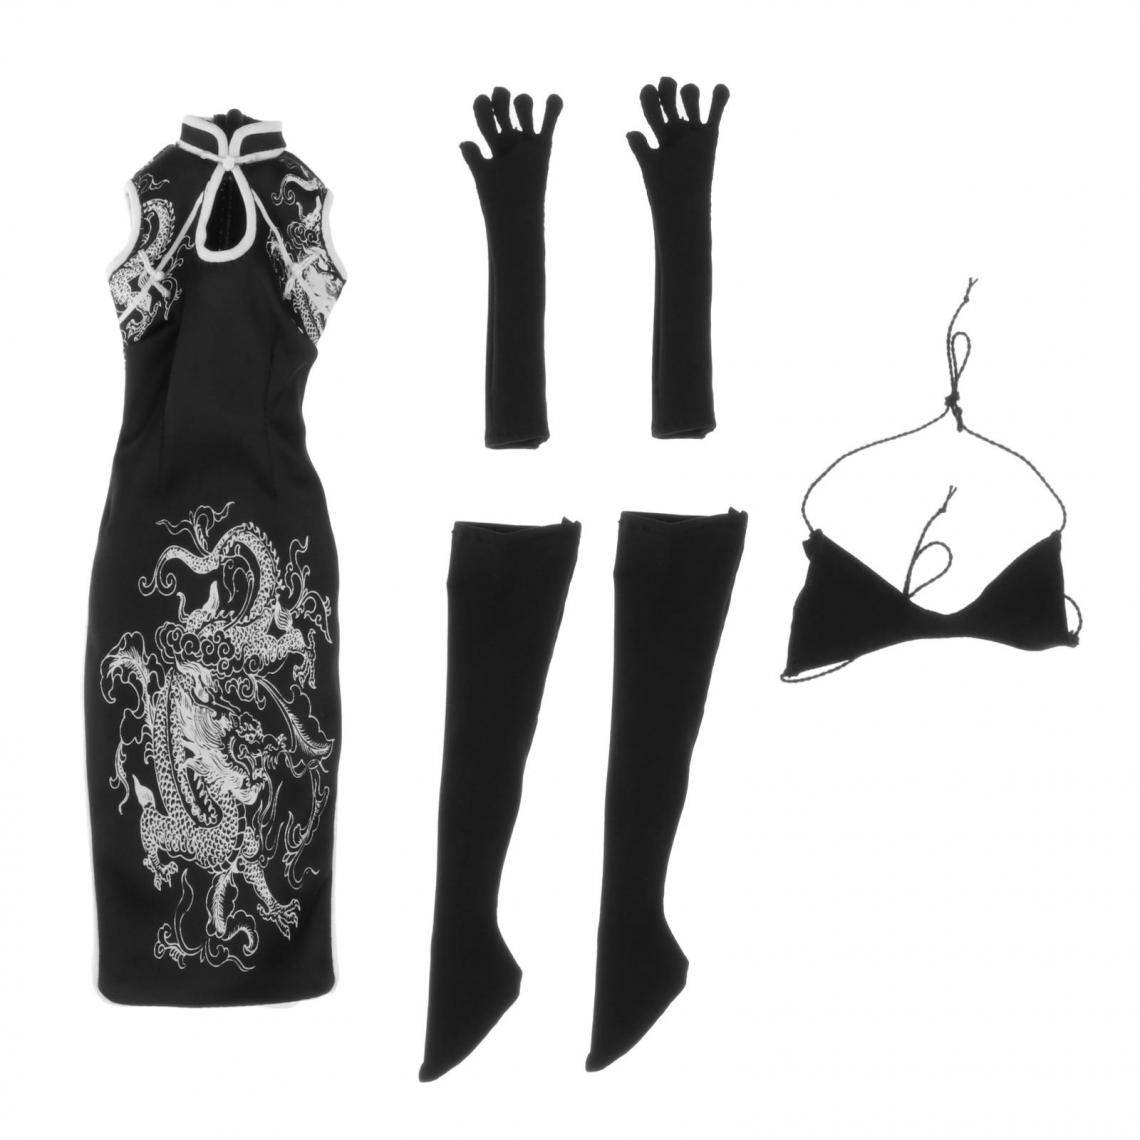 marque generique - 1/6 Filles Action Figure Cheongsam Costume Pour HT Toys 12 "Poupée Body Dress-Up Noir - Films et séries